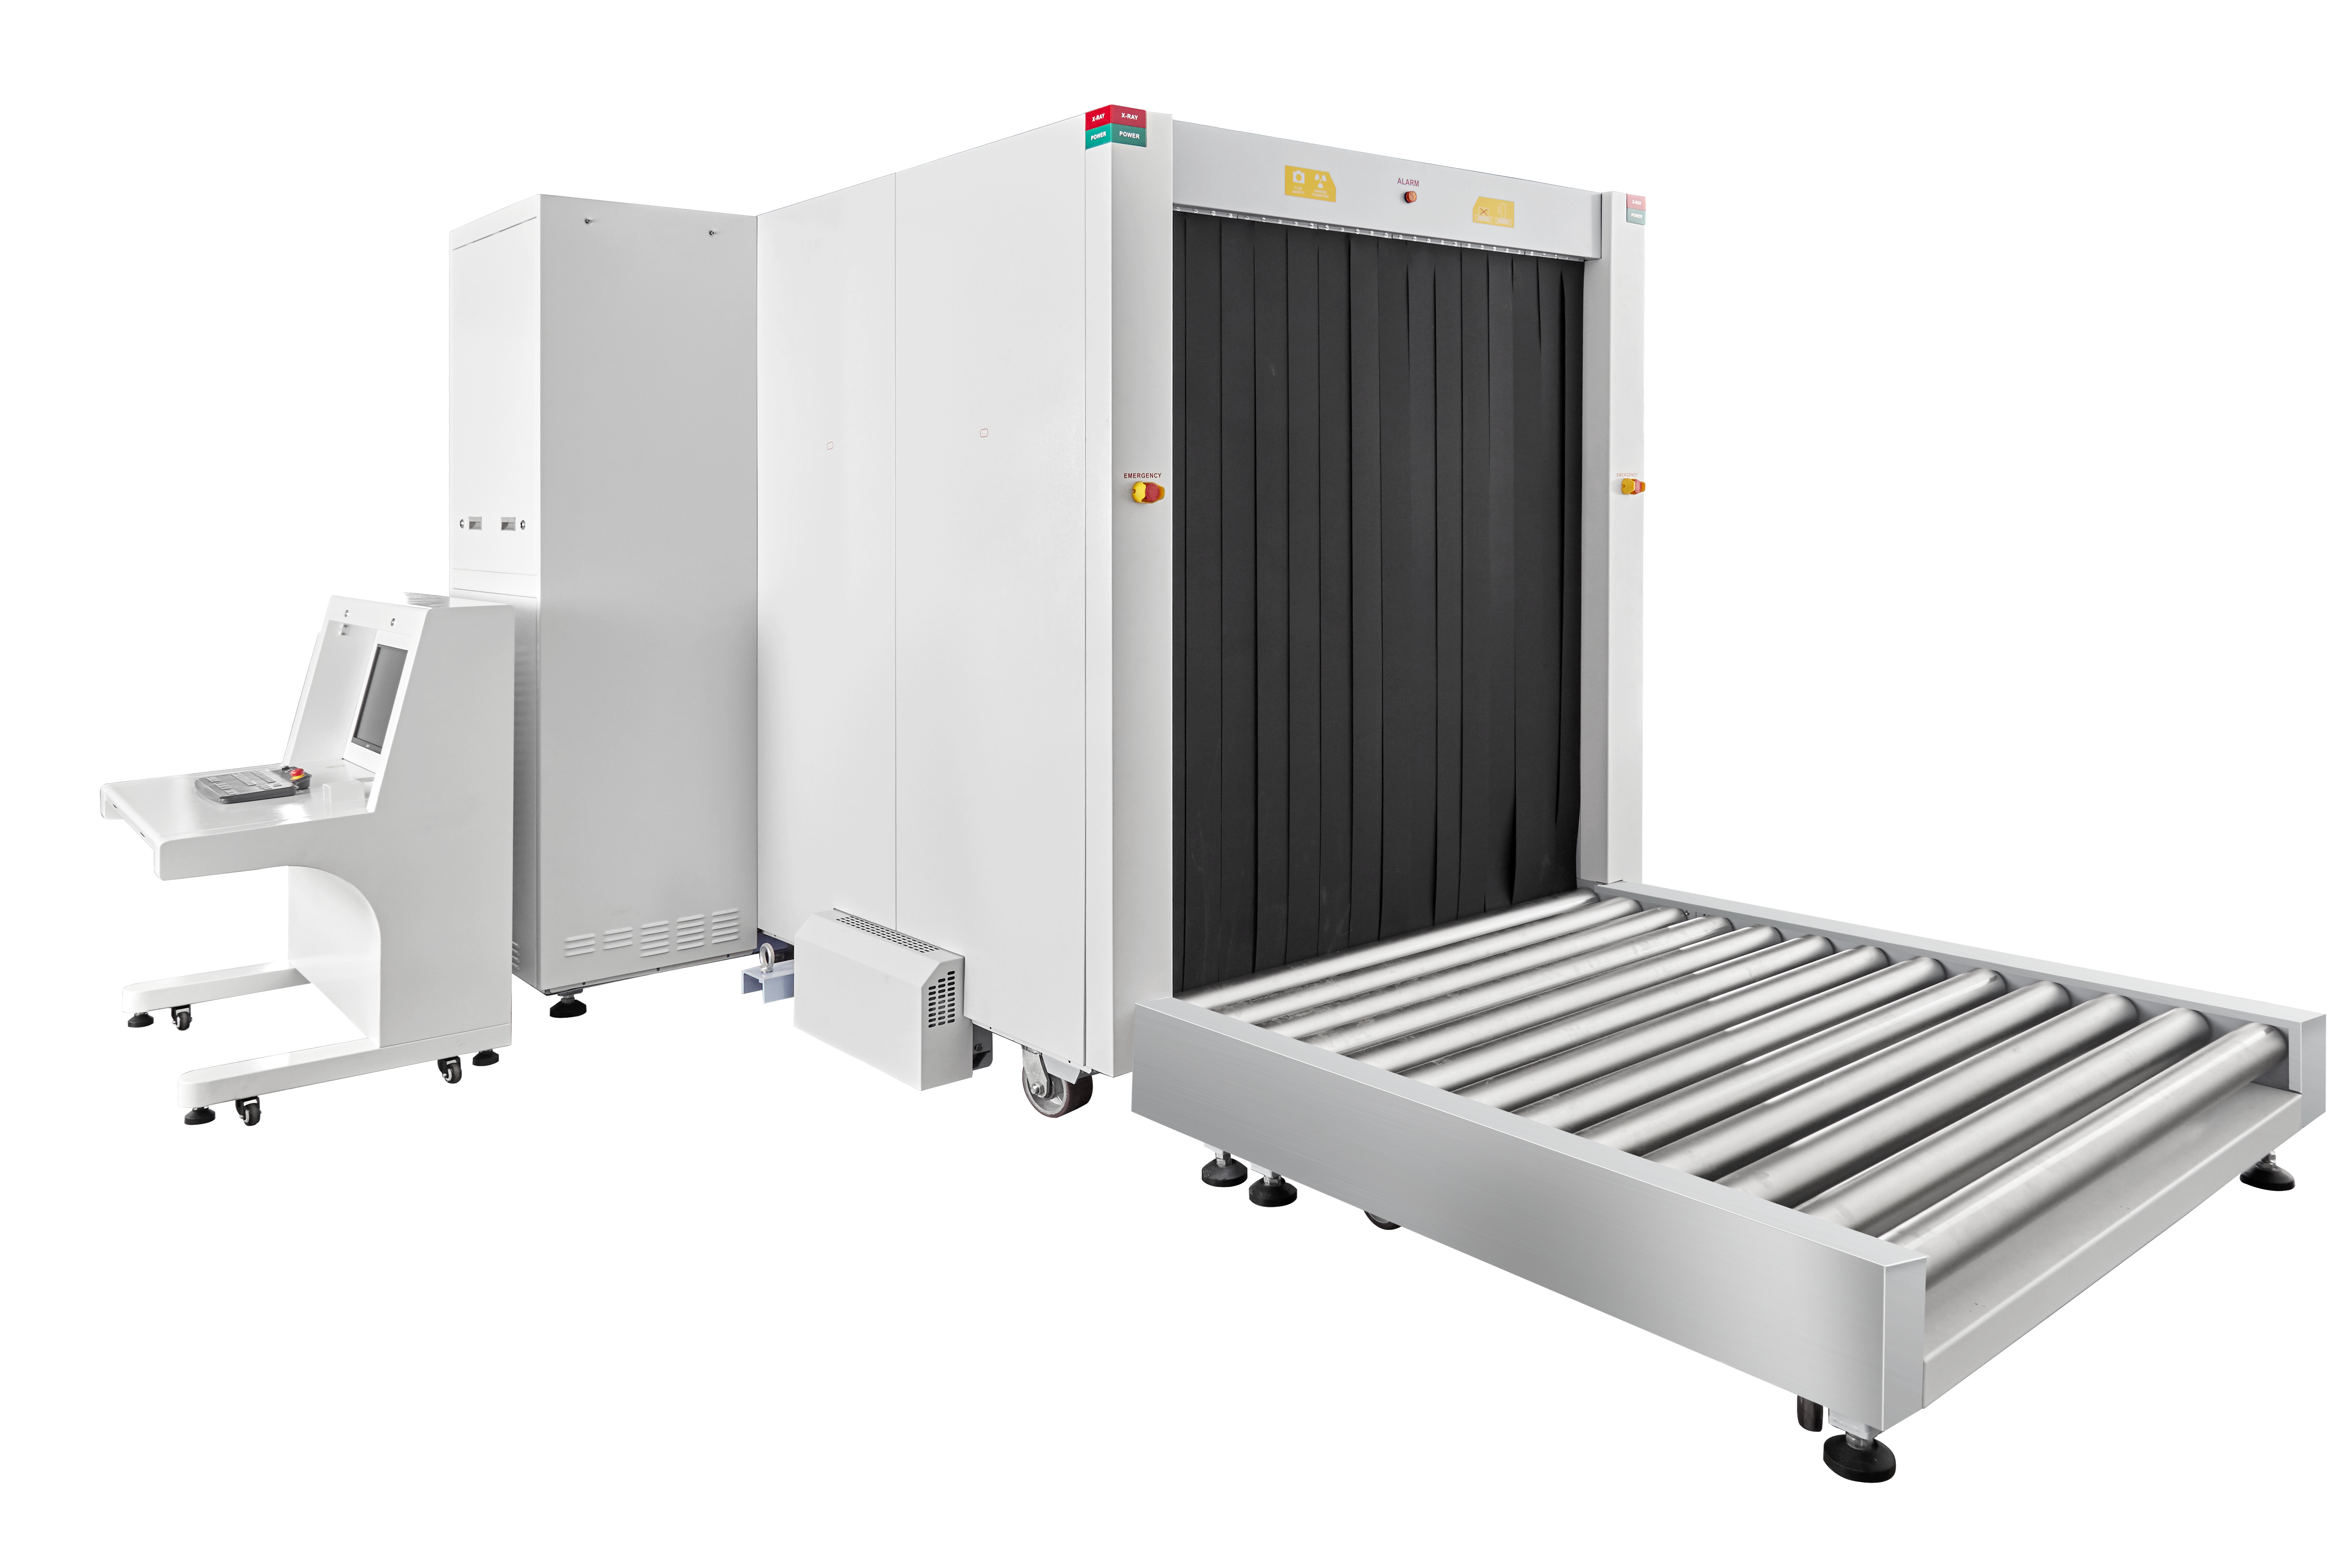 Escáner de inspección de carga de rayos X para inspección de seguridad de carga, equipaje y equipaje de paletas de aeropuerto con aprobación CE, FCC, FDA